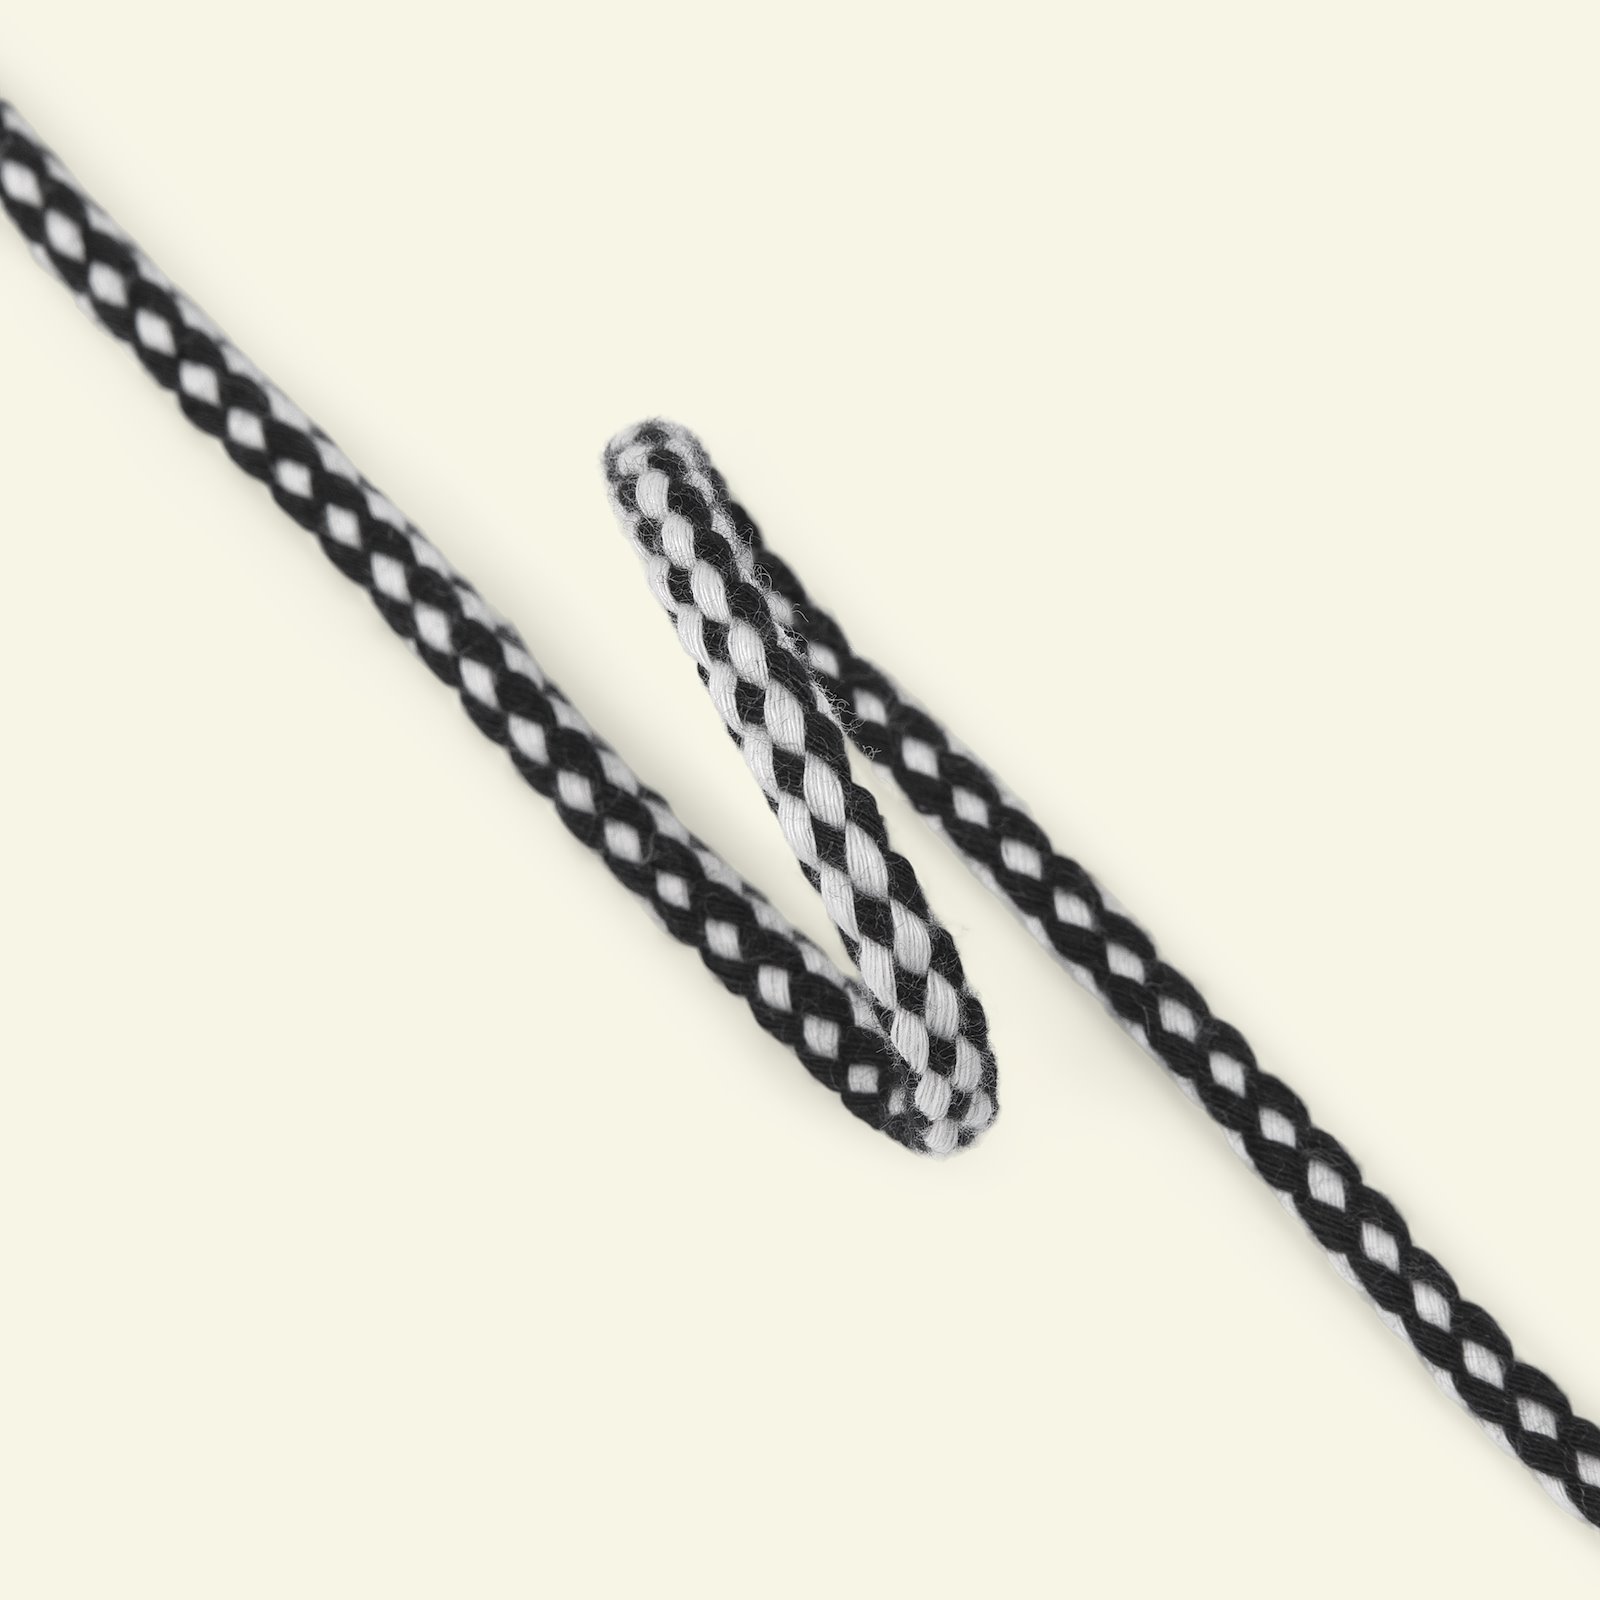 Anorak cord 4,5mm black/white 5m 75205_pack